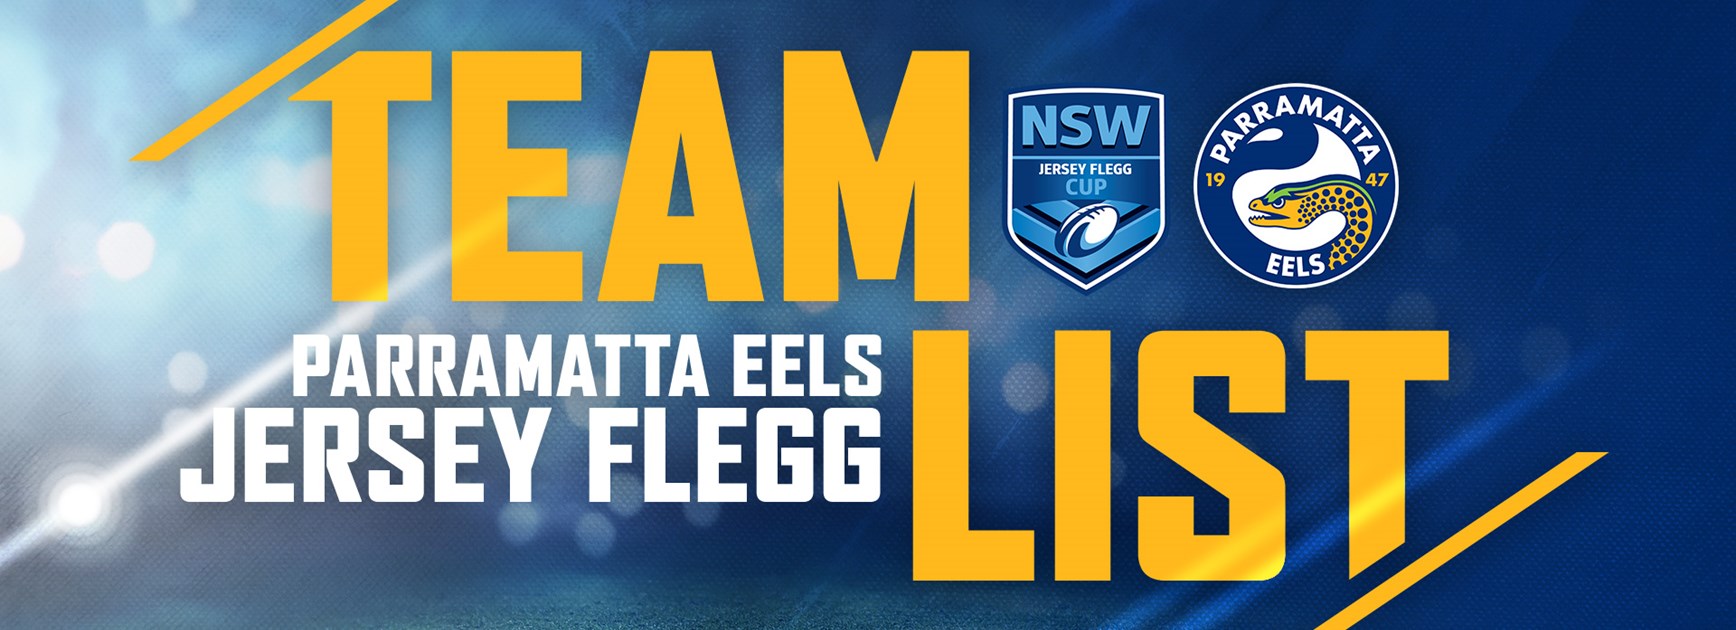 Eels Jersey Flegg Round 22 Team List